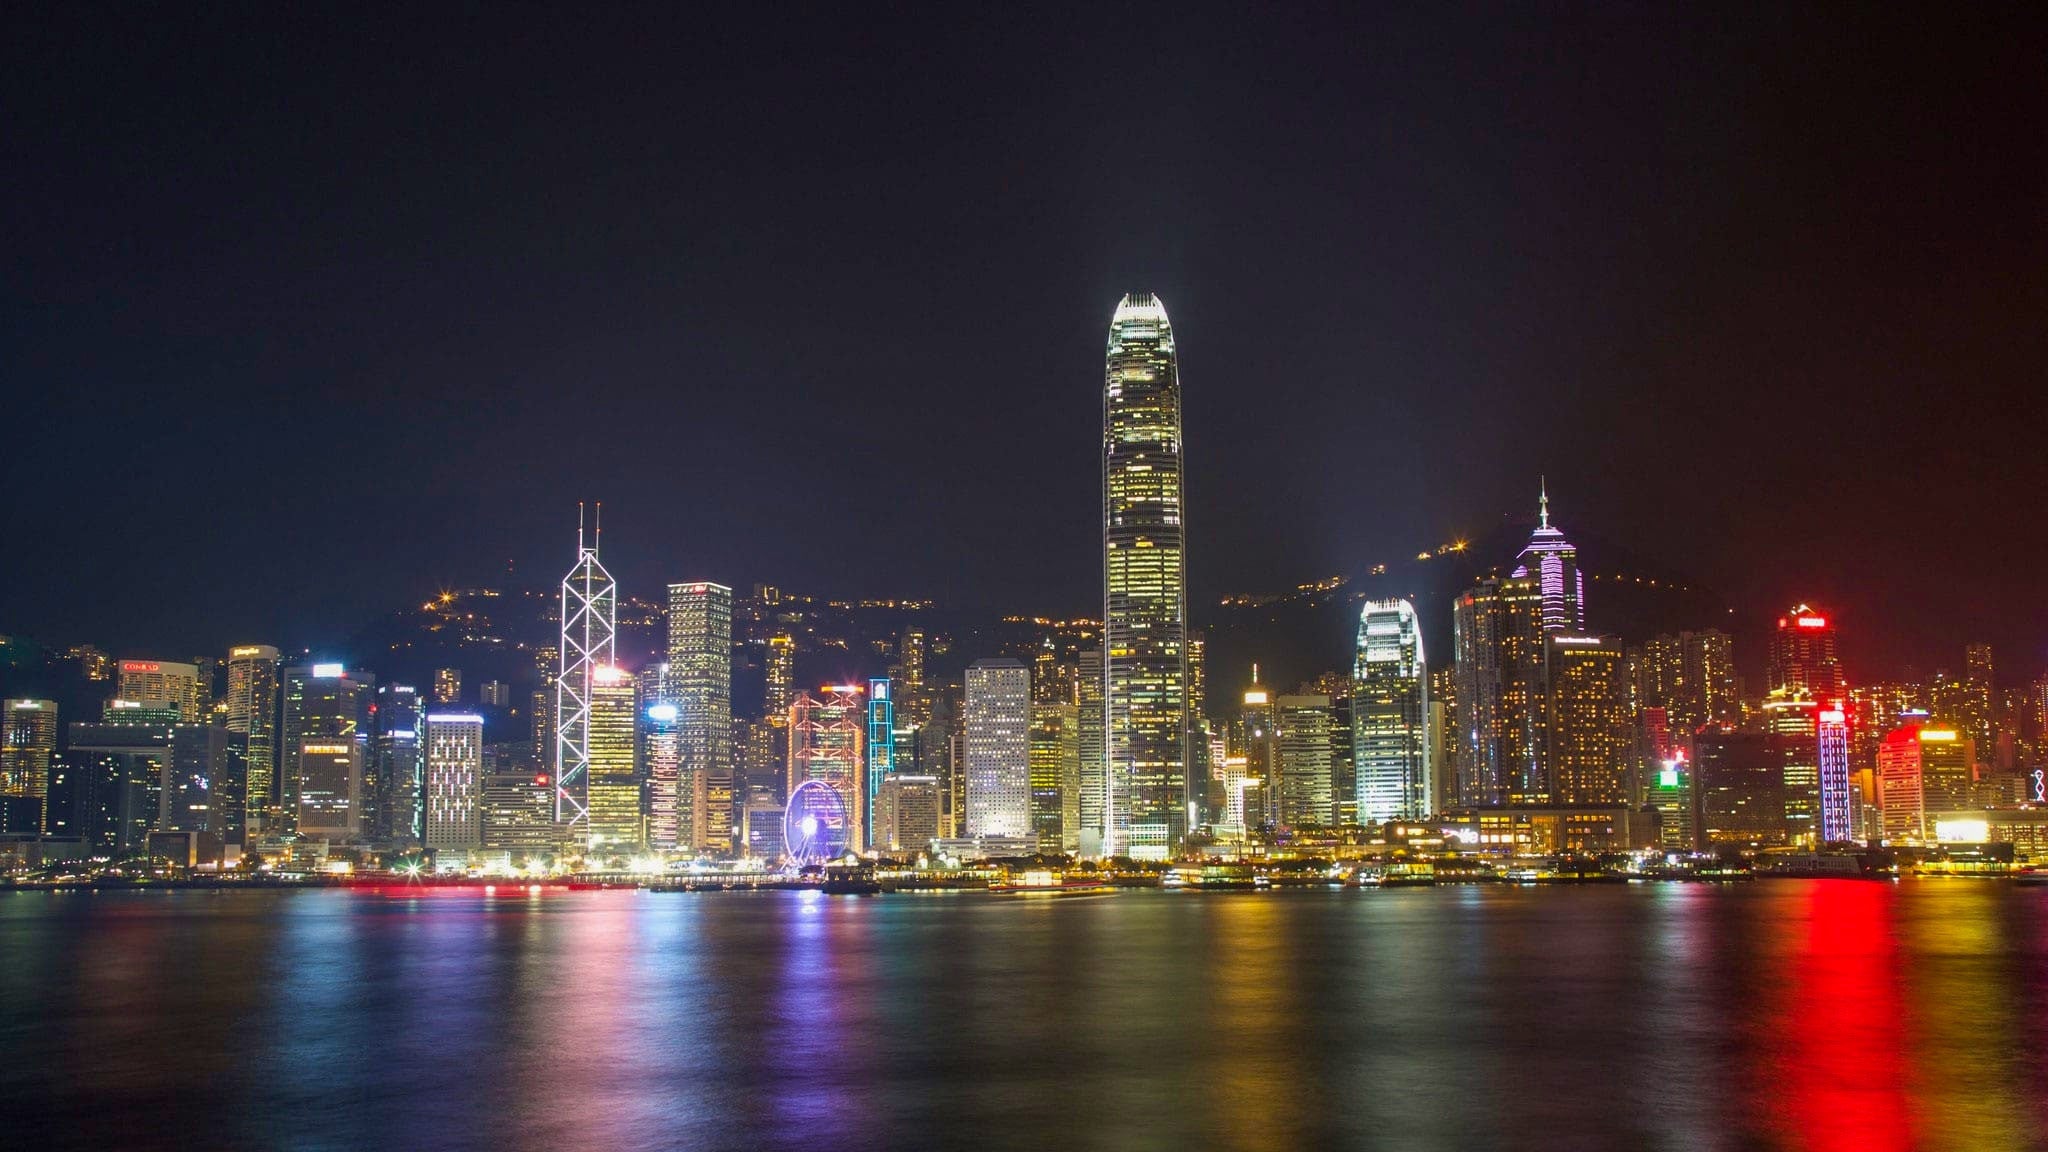 Victoria Harbour, Hong Kong at night